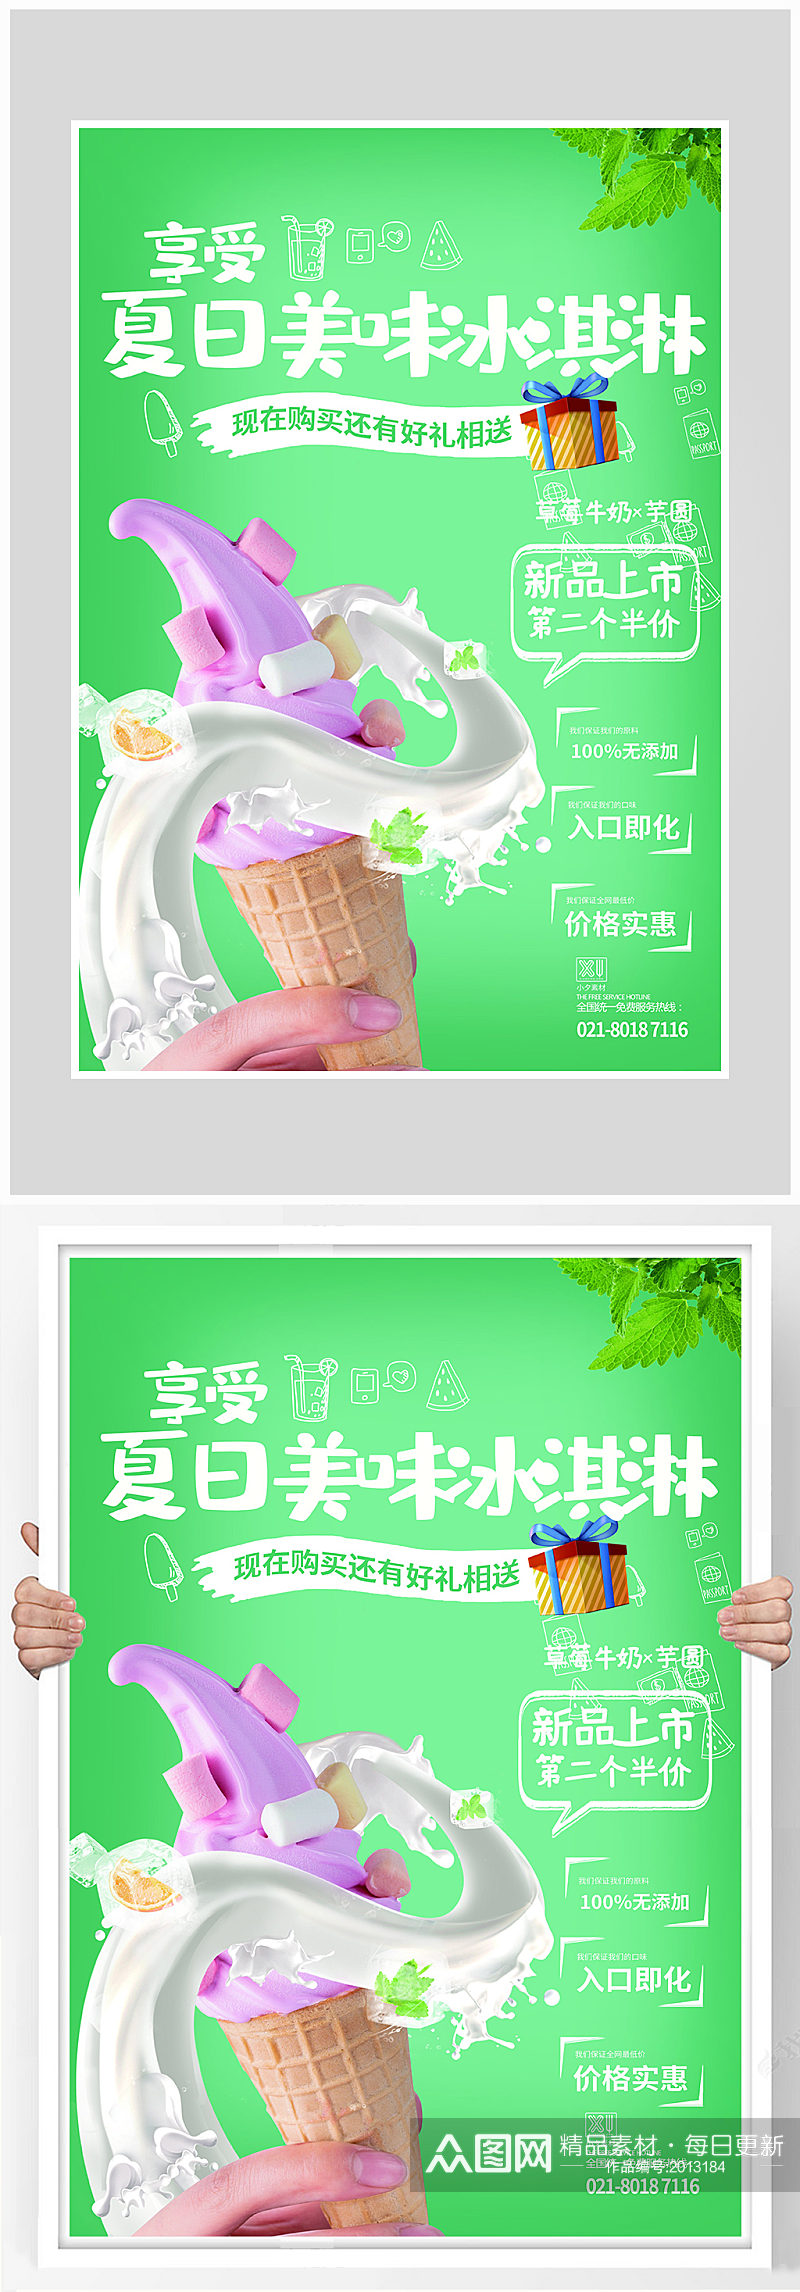 创意质感冰激凌奶茶海报设计素材